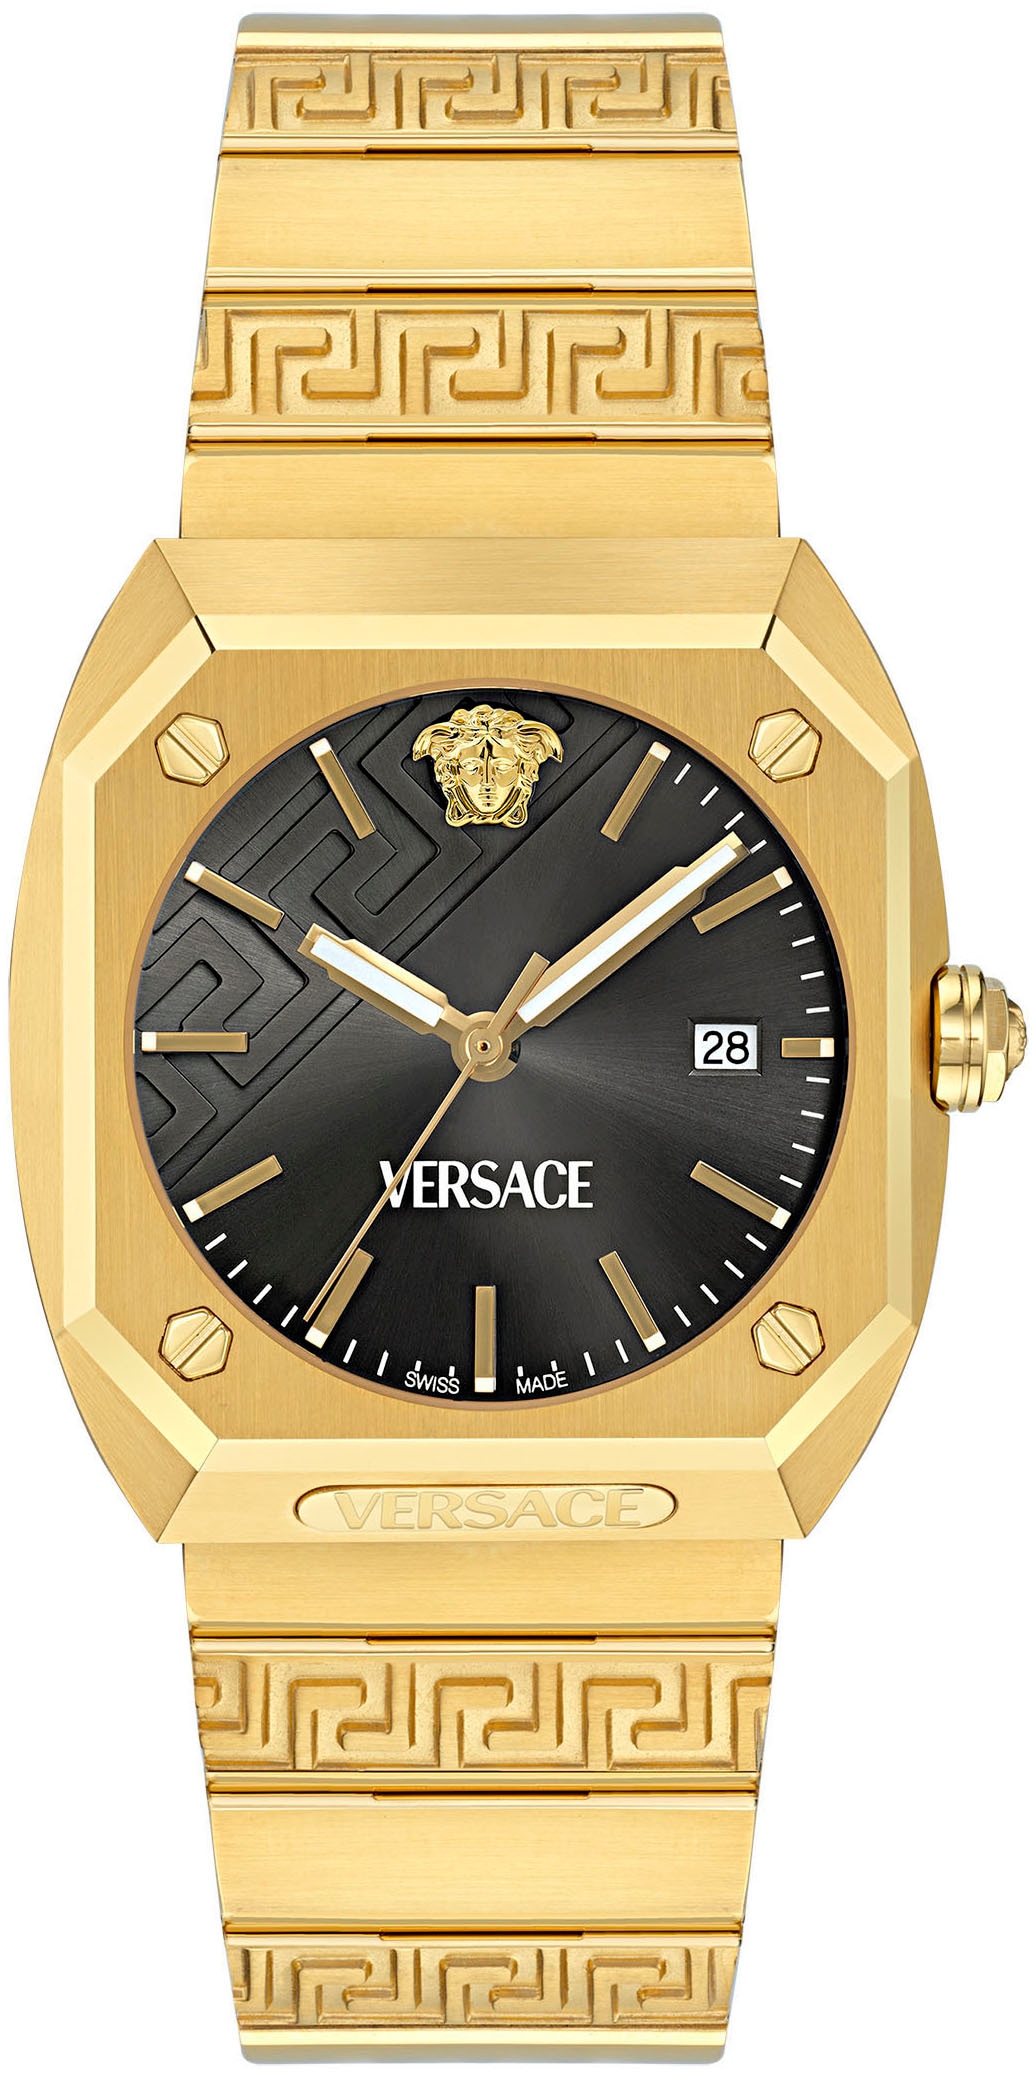 Versace Quarzuhr »ANTARES«, Armbanduhr, Herrenuhr, Saphirglas, Datum, Swiss Made, analog